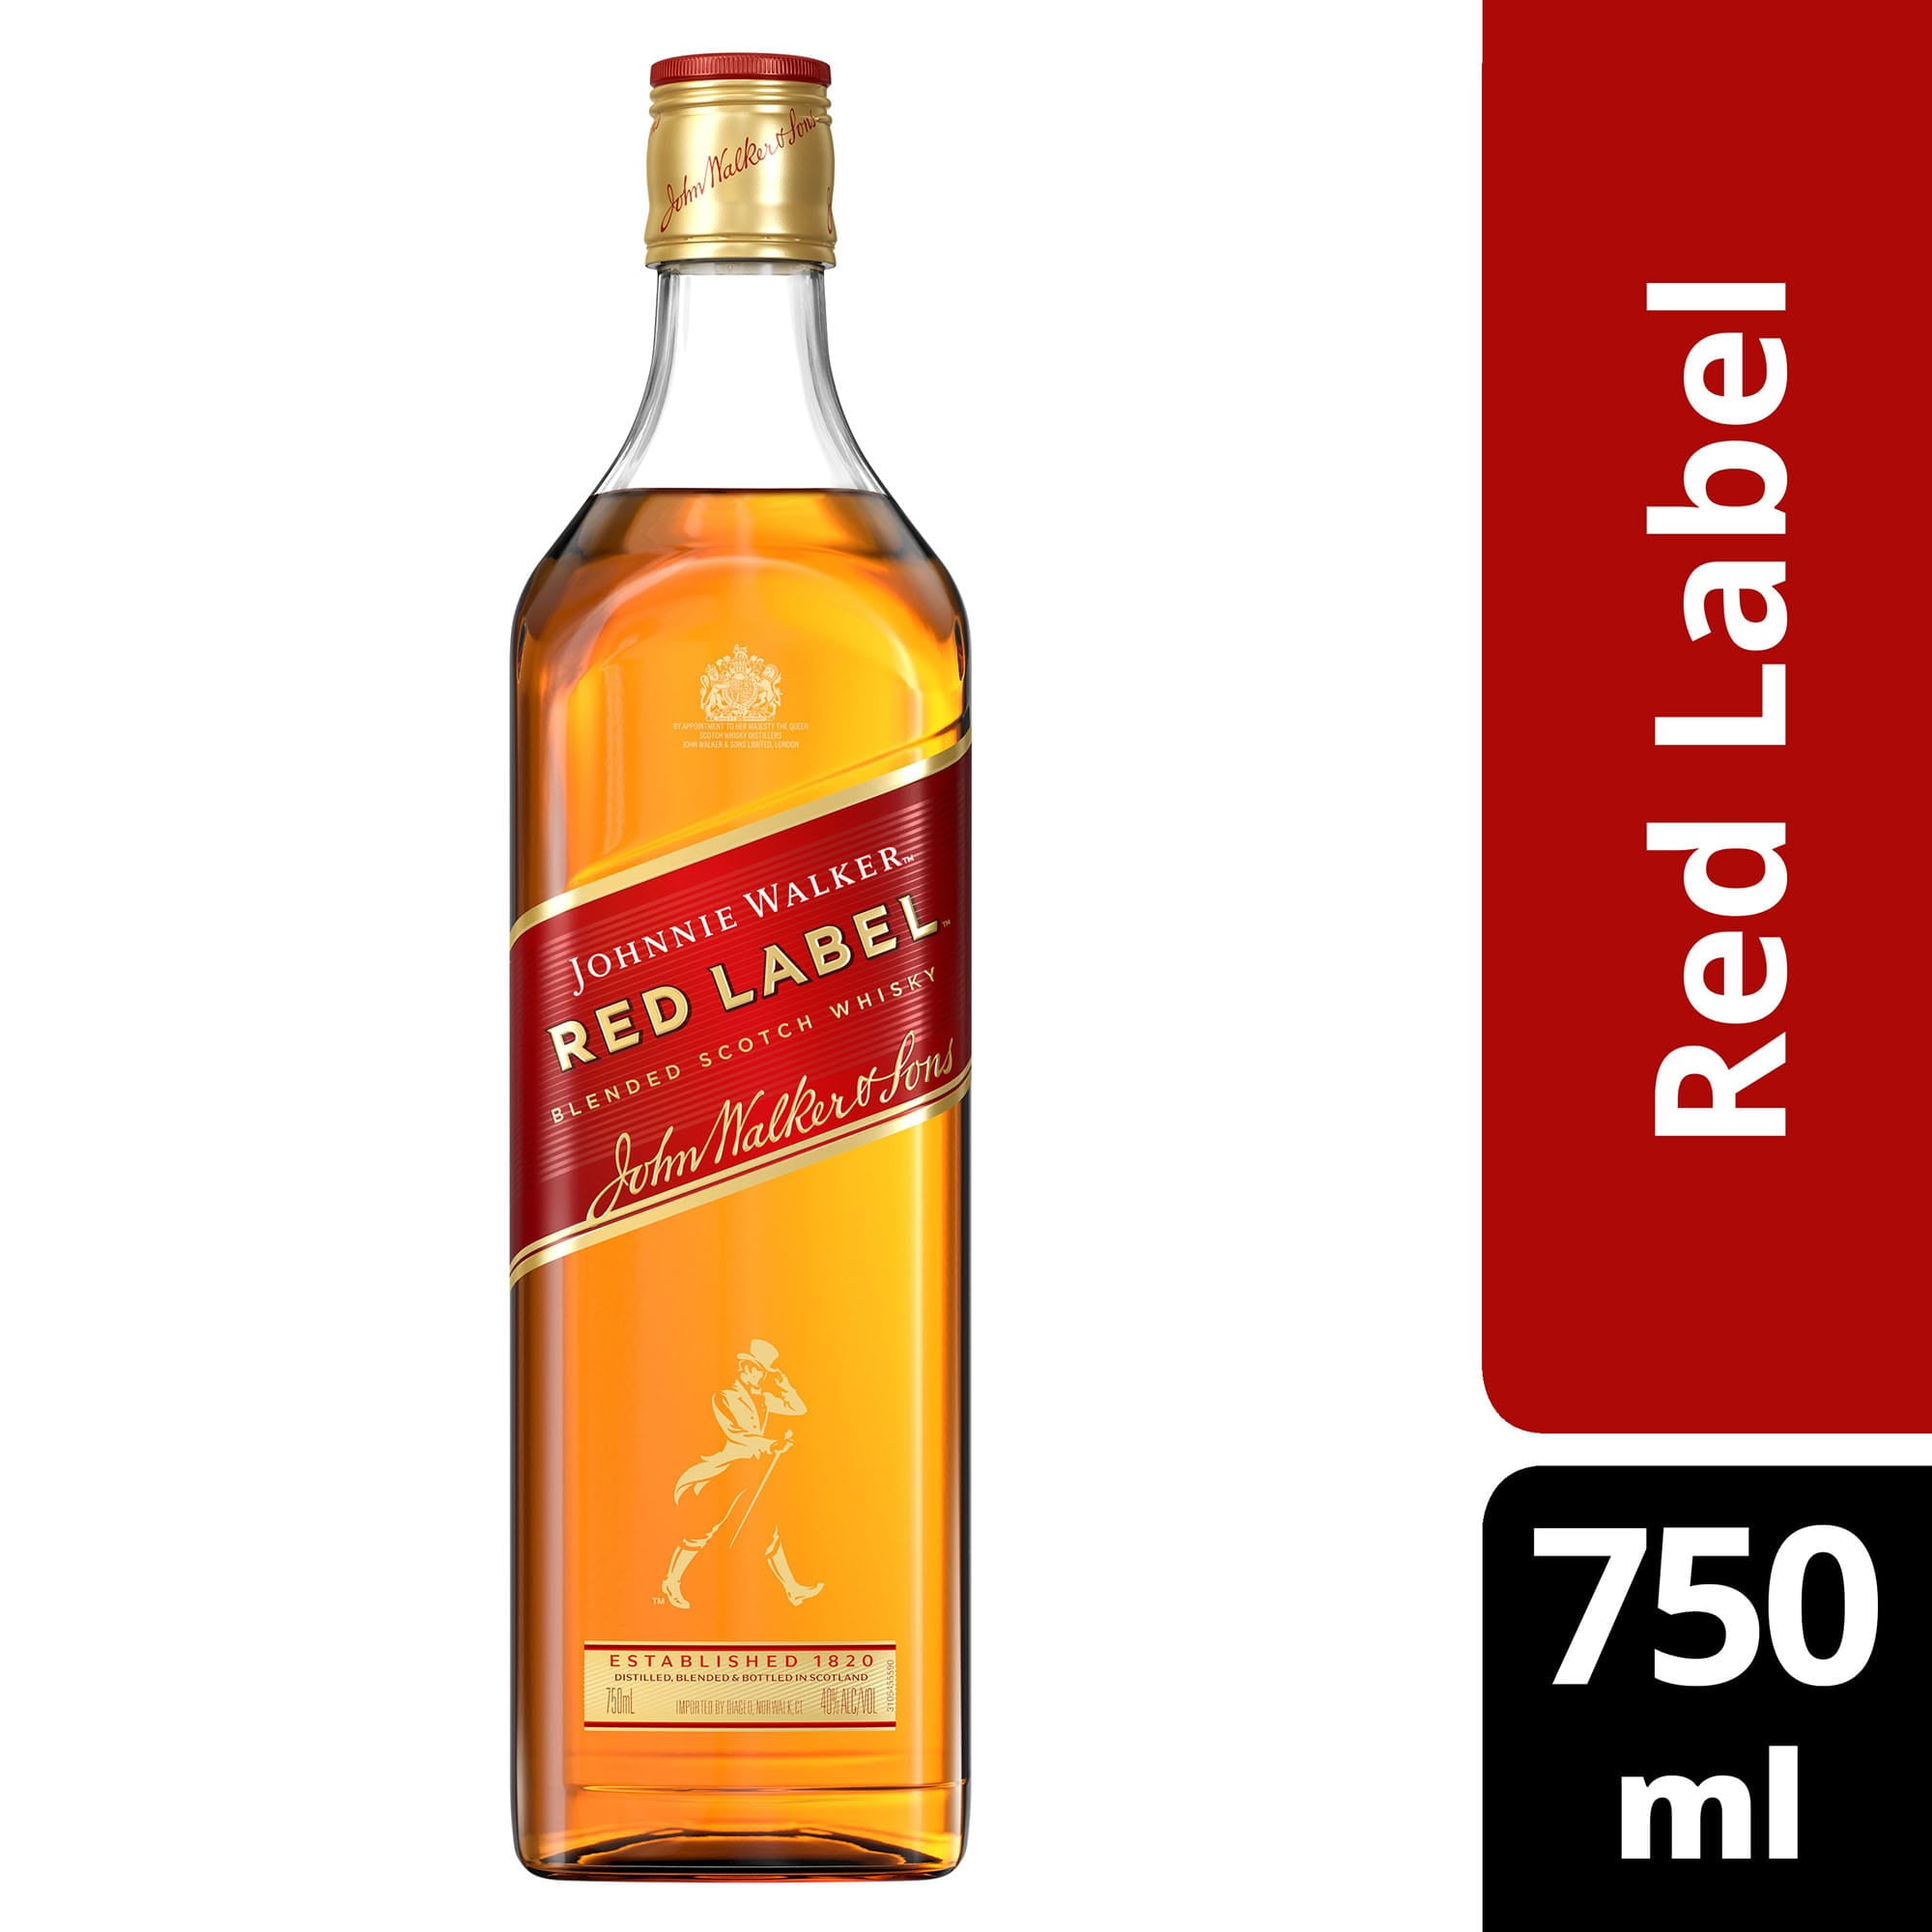 Walker Red Label Blended Scotch 750 ml, 40% ABV - Walmart.com